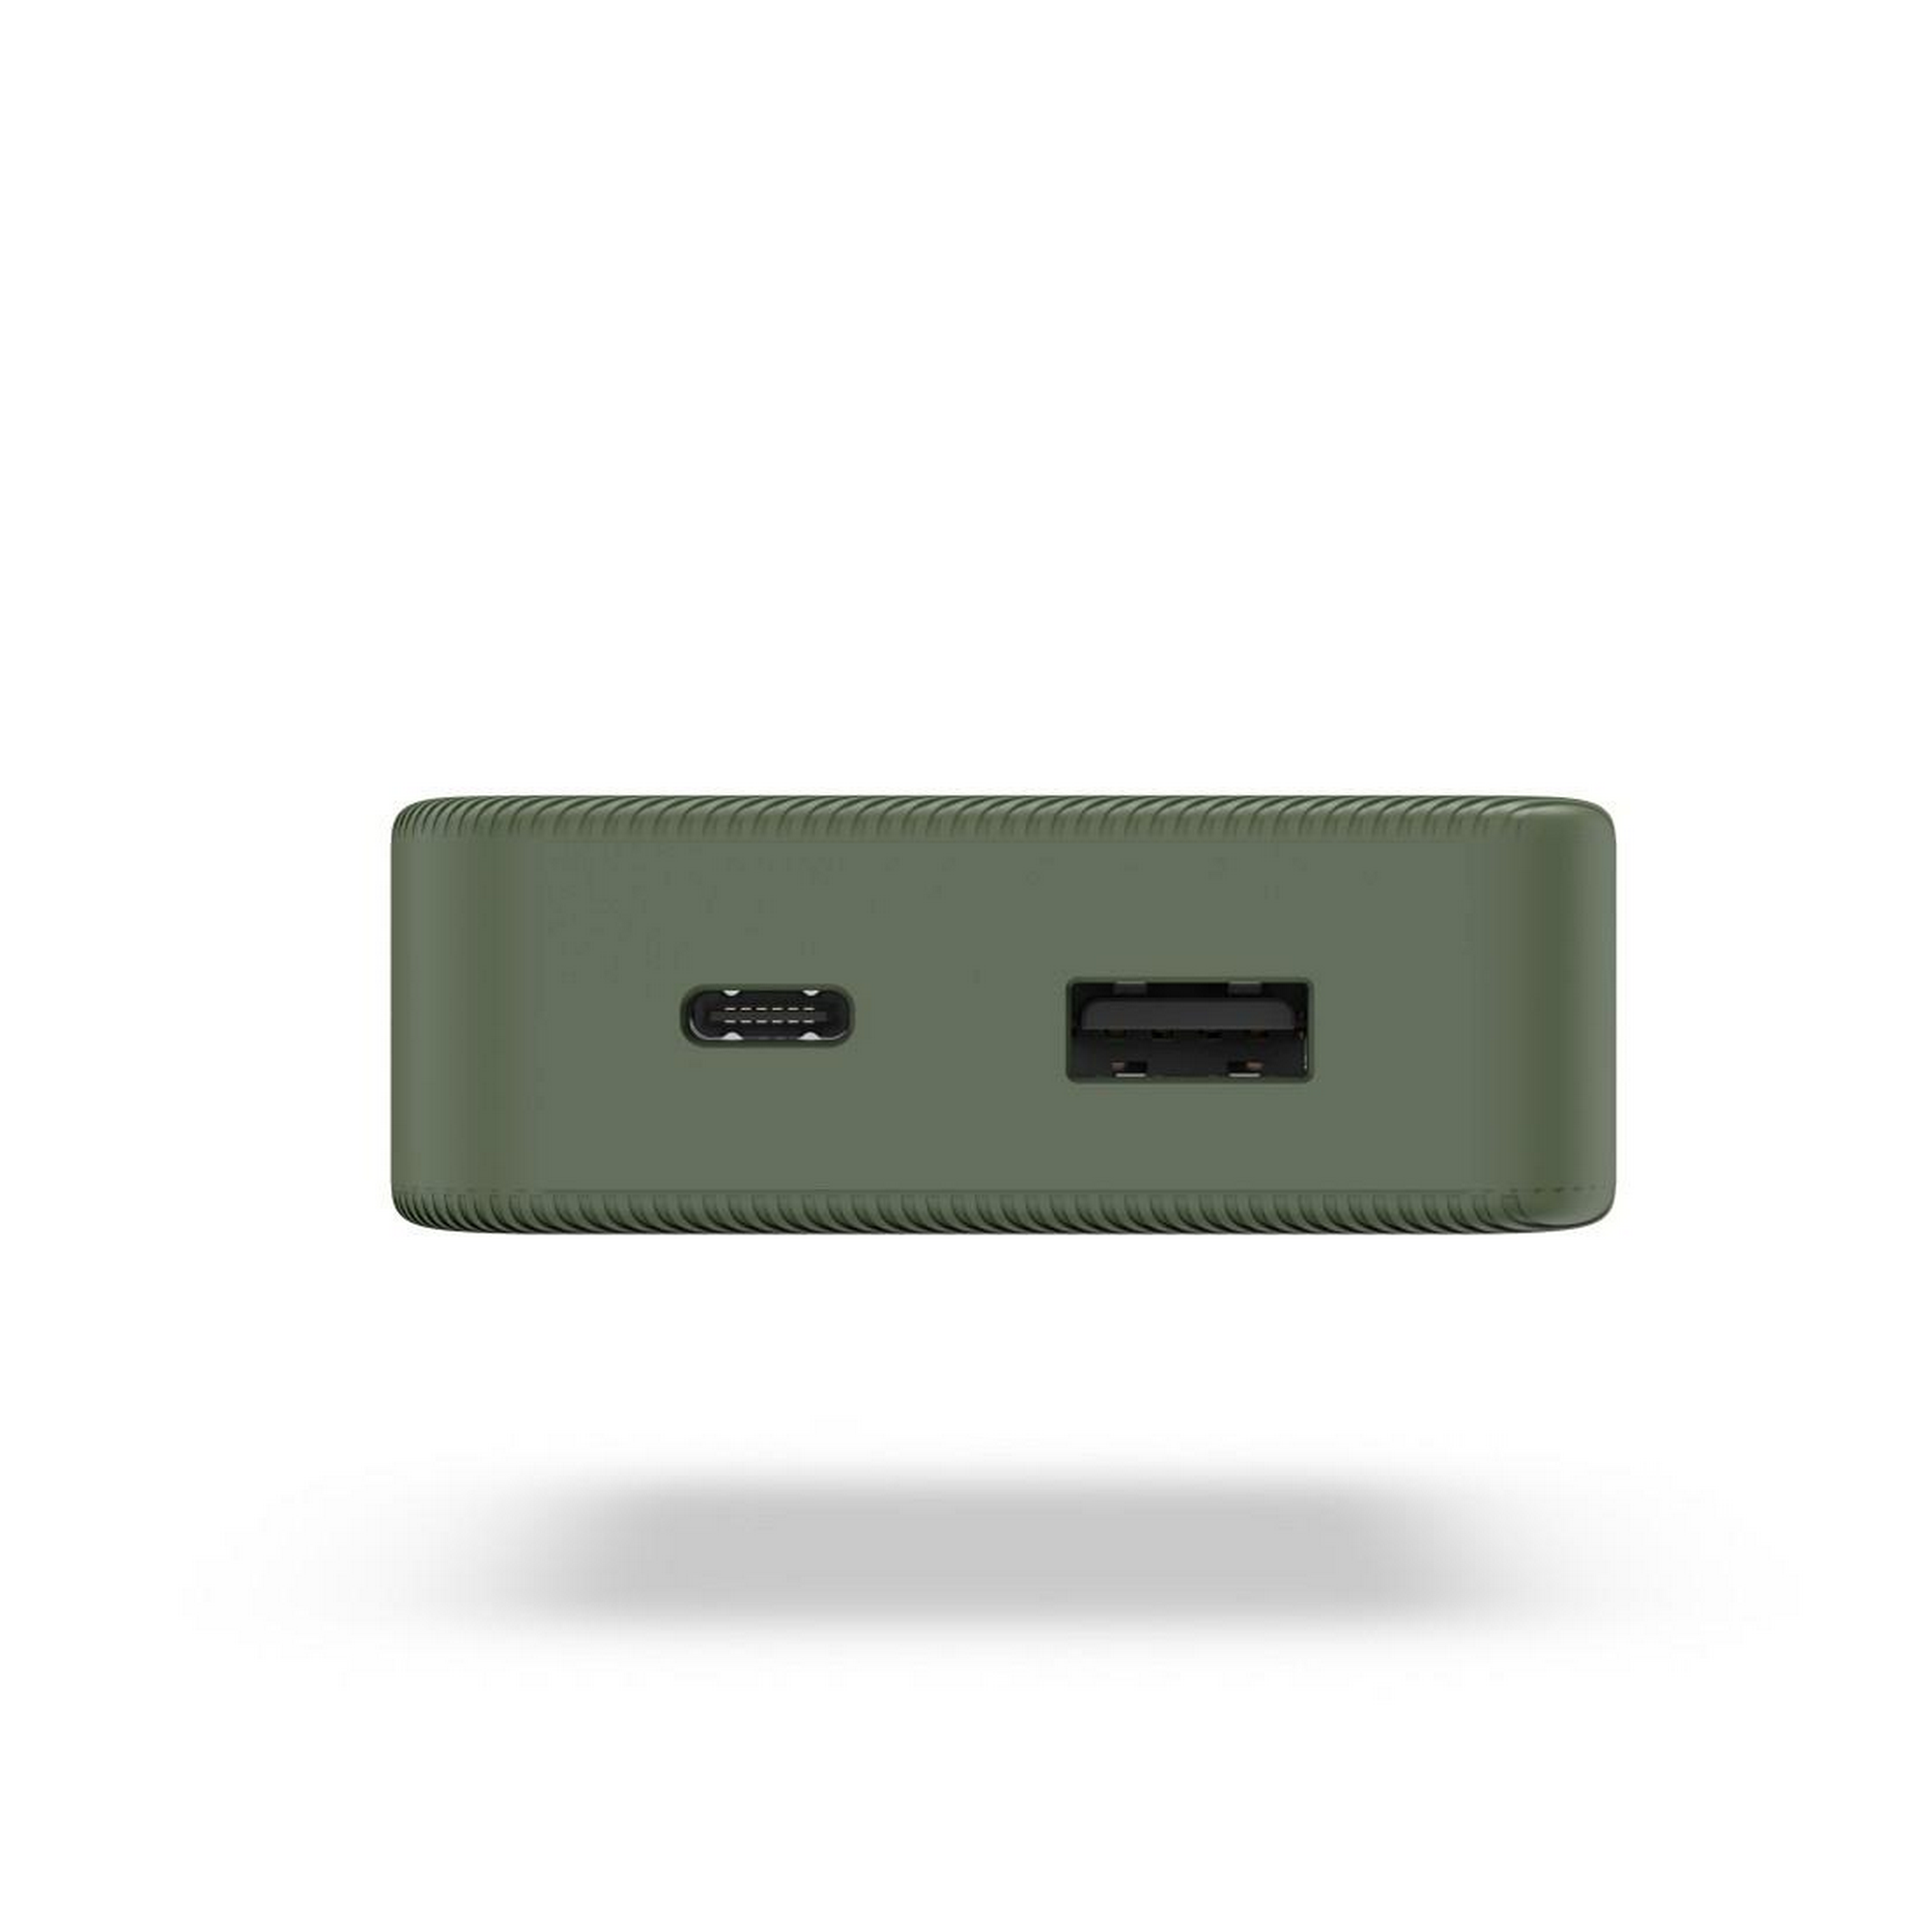 Power Pack 'Colour 10' grün 10000 mAh USB-C/USB-A + product picture